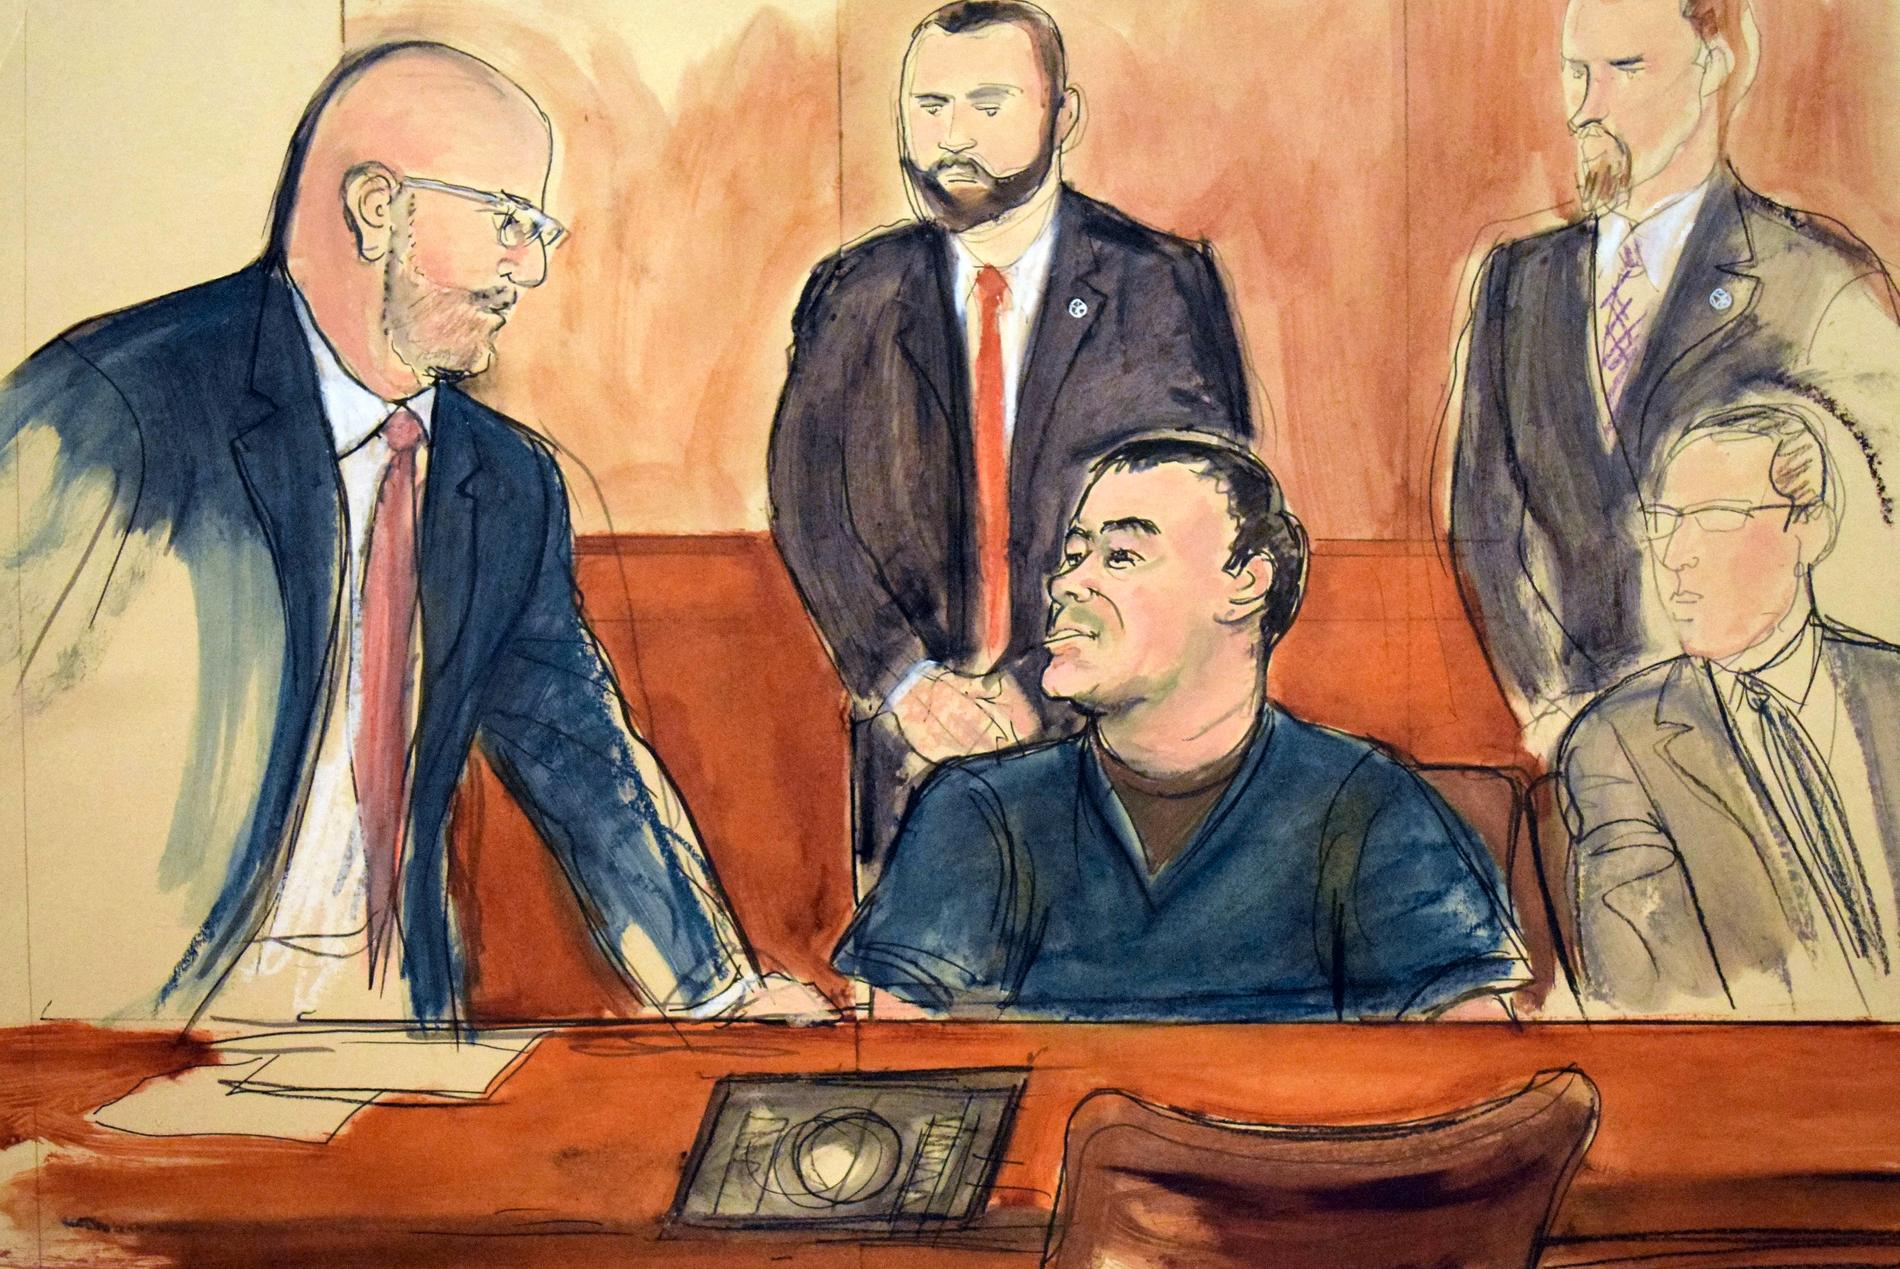 Efter utlämnandet till USA hölls rättegången mot Joaquín "El Chapo" Guzmán (sittande i mitten) i New York.